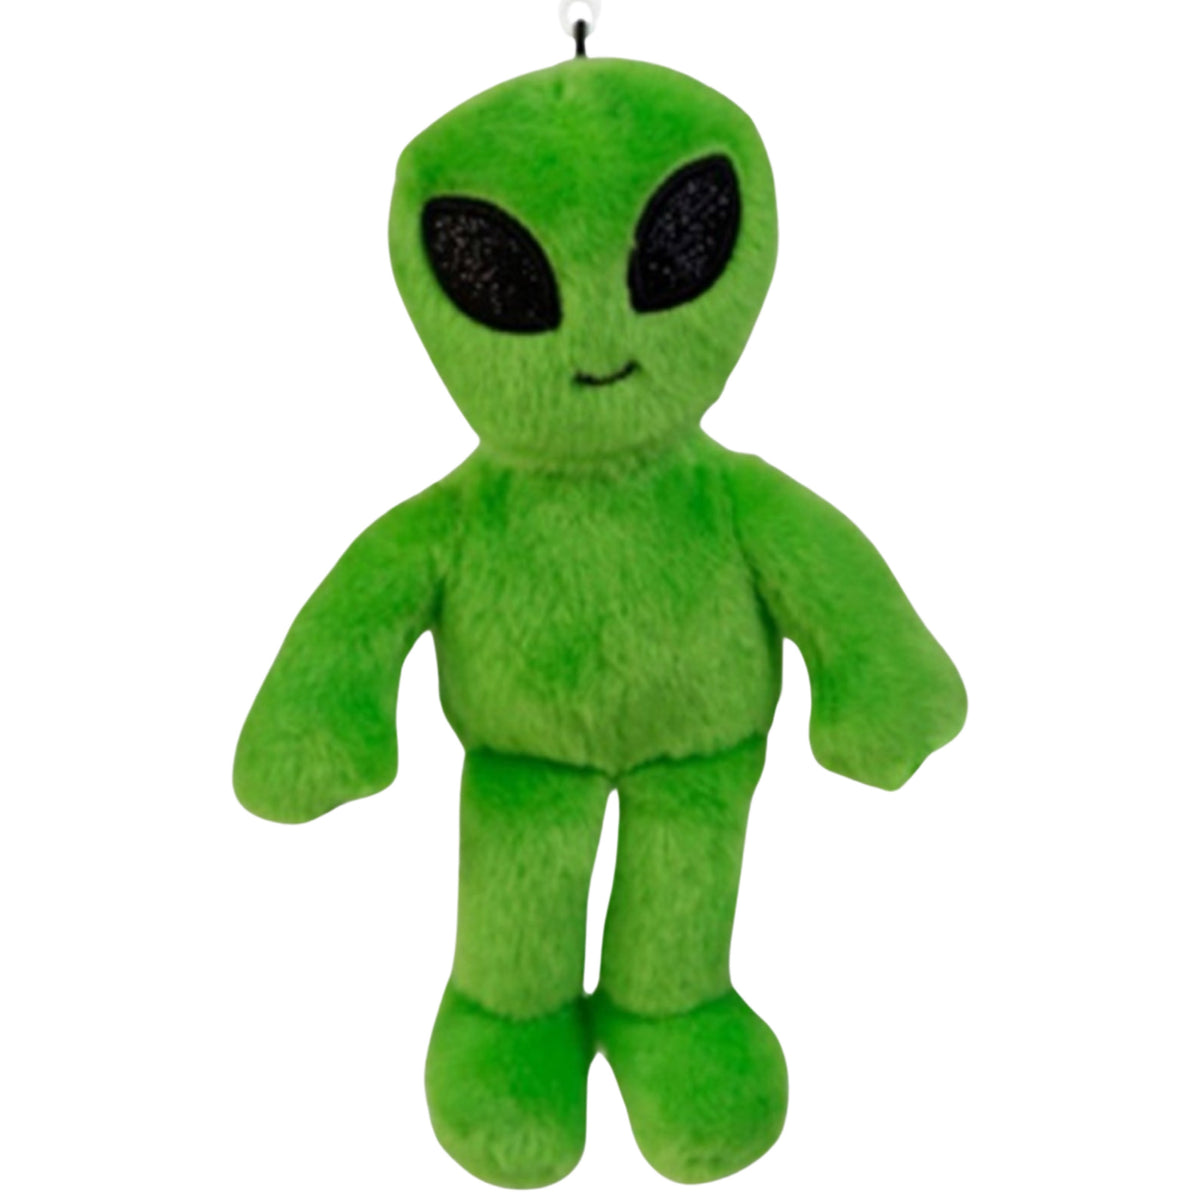 5" Wishpets Alien Toy Mini Plush Stuffed Alien w/Clip for Backpack